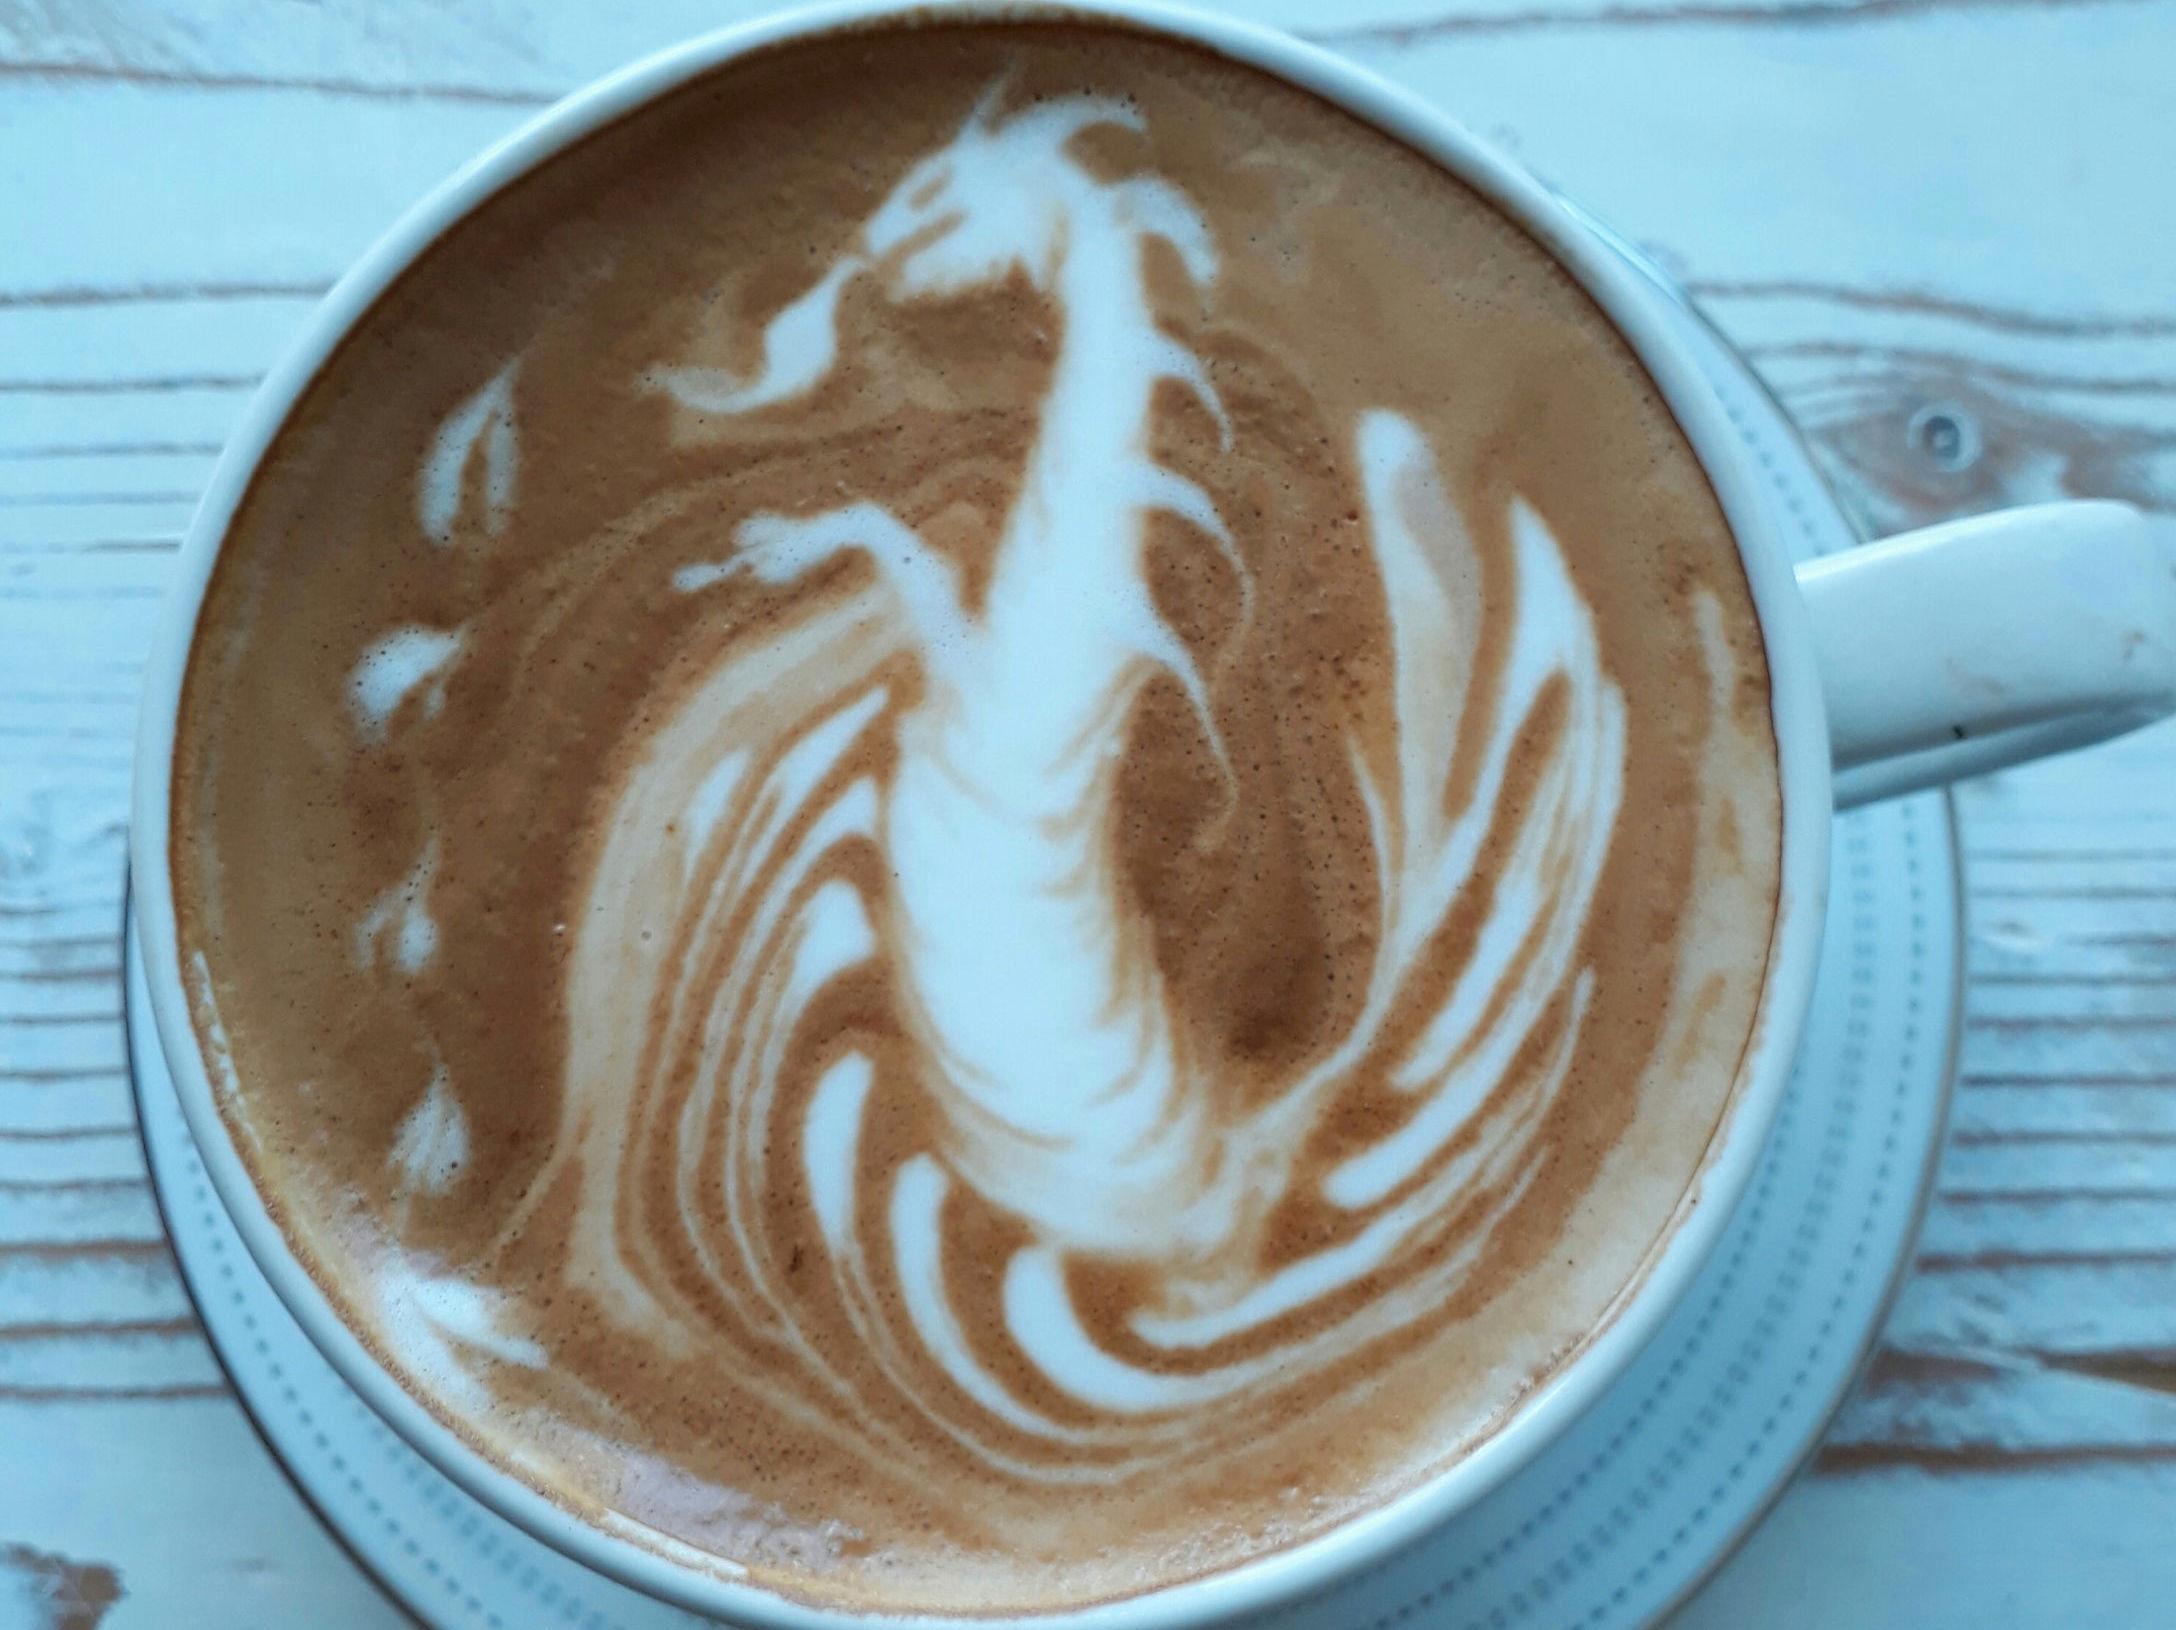 KAFFESPRUTENDE: - Kundene liker dragene veldig godt, forteller Palella om Game of Thrones-kaffen han serverer. Bildene av kaffekunsten legger han ut på Instagram-kontoen sin. Foto: Giuseppe Alessandro Palella